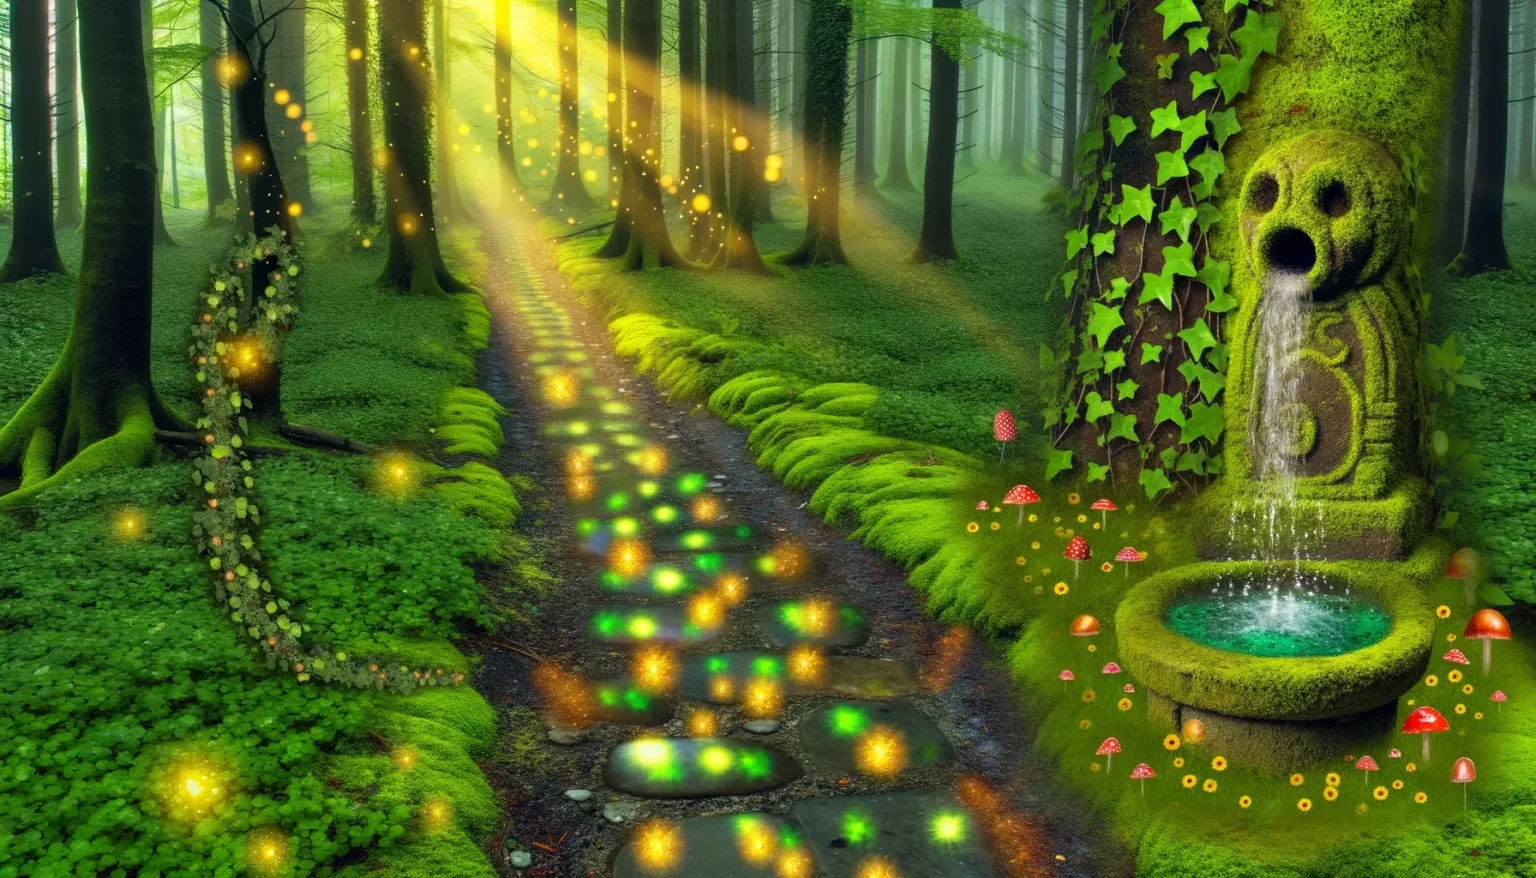 Ein verzauberter Wald mit leuchtenden Steinen auf einem Pfad, der einen Bach überquert, umgeben von üppigem, grünem Moos und Bäumen. Sonnenstrahlen scheinen durch die Baumkronen, während im rechten Bildteil eine von Efeu umrankte steinerne Quellskulptur Wasser in ein Becken speit. Farbenprächtige Pilze und leuchtende Partikel verleihen der Szene eine magische Atmosphäre.